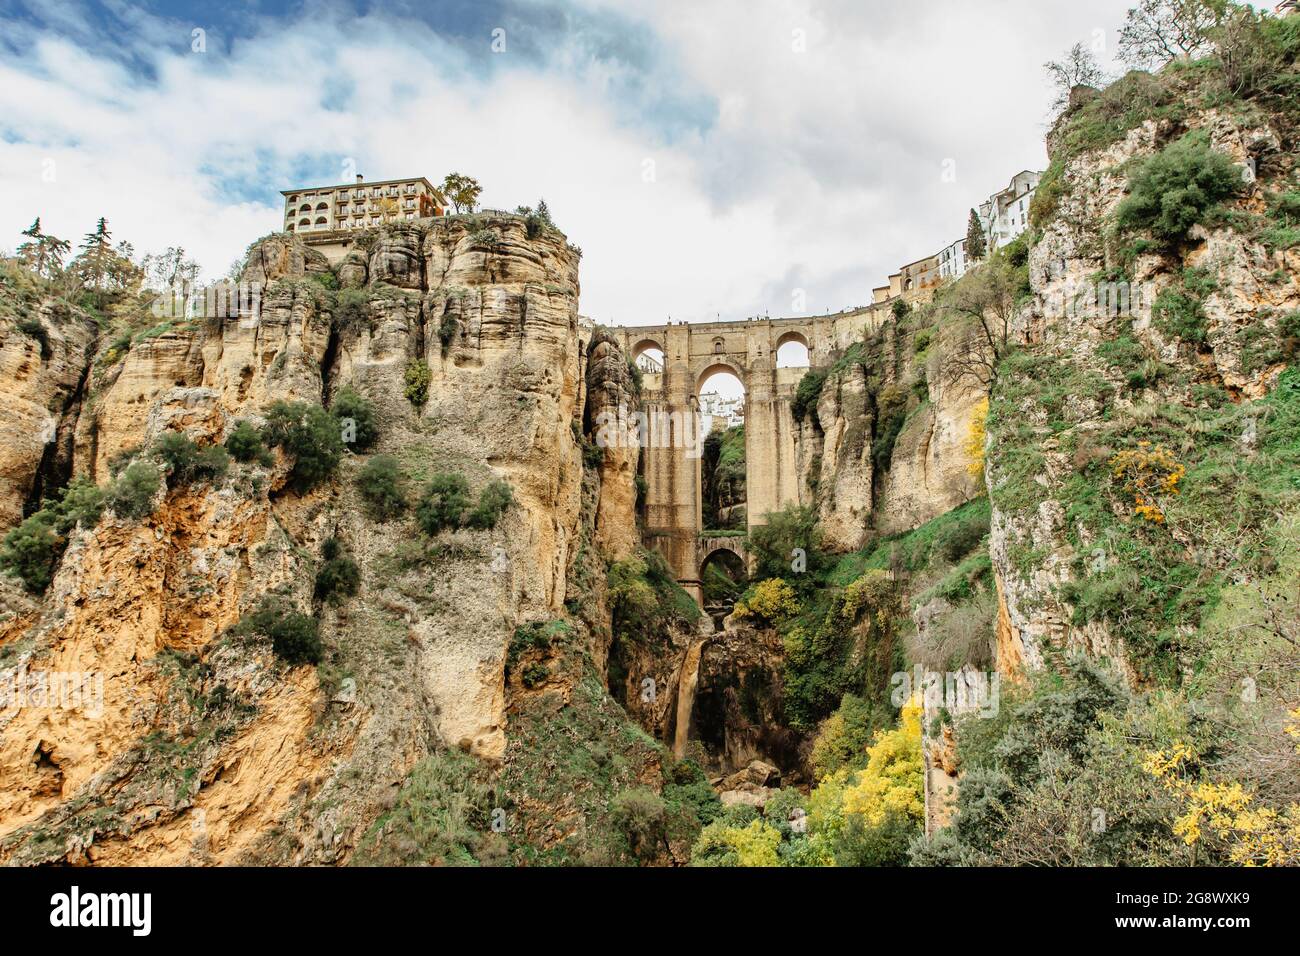 Wunderschöne Aussicht auf Ronda, Andalusien, Spanien. Puente Nuevo Neue Brücke über den Fluss Guadalevin.Alte Steinbrücke, Stadt am Rande einer Klippe mit Bäumen Stockfoto